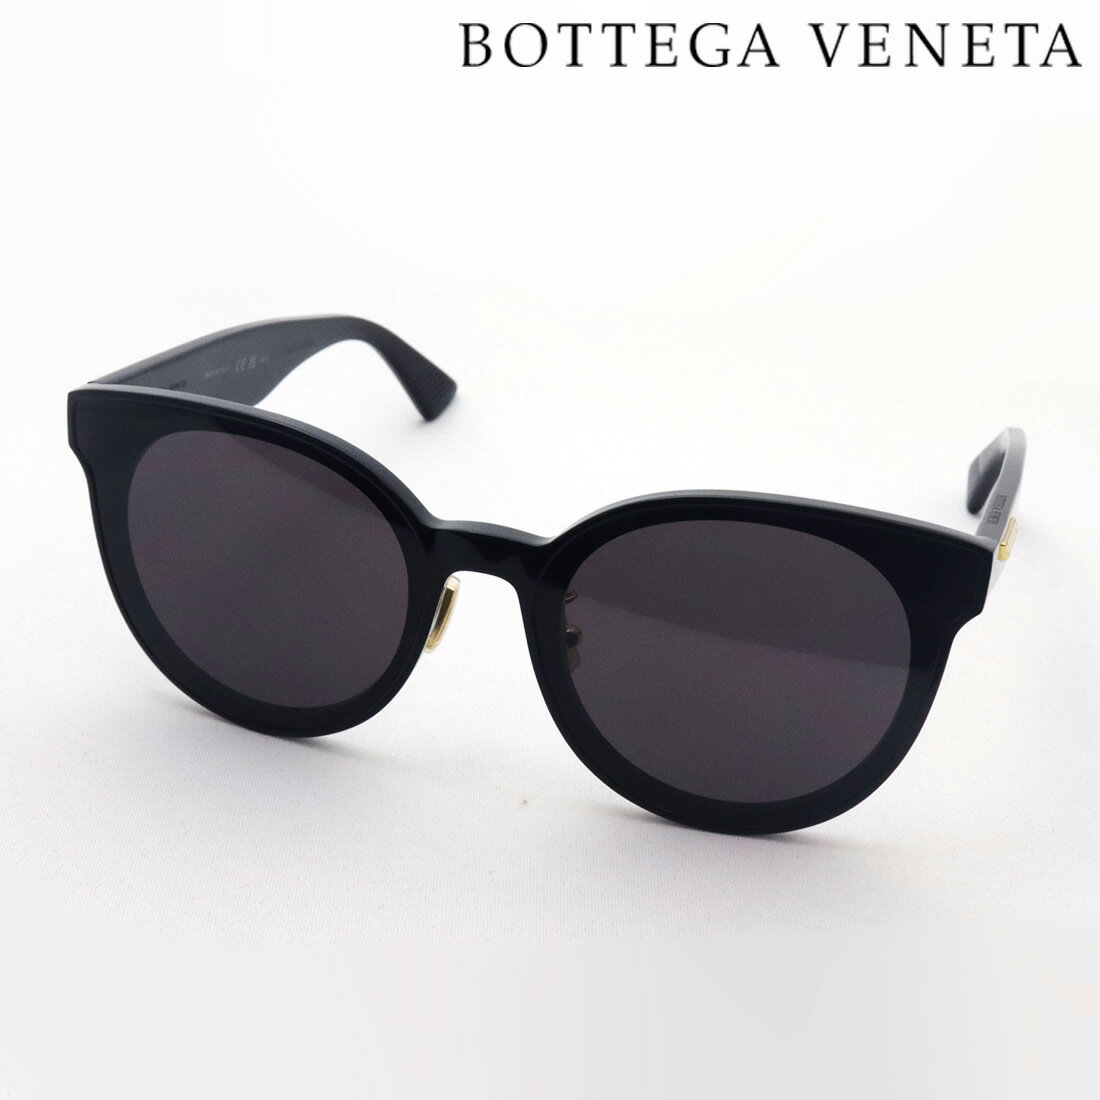 ボッテガ・ヴェネタ サングラス レディース 【ボッテガ ヴェネタ サングラス 正規販売店】BOTTEGA VENETA BV0304SK 001 NEW CLASICC ボッテガヴェネタ Made In Italy レディース メンズ ボストン ブラック系